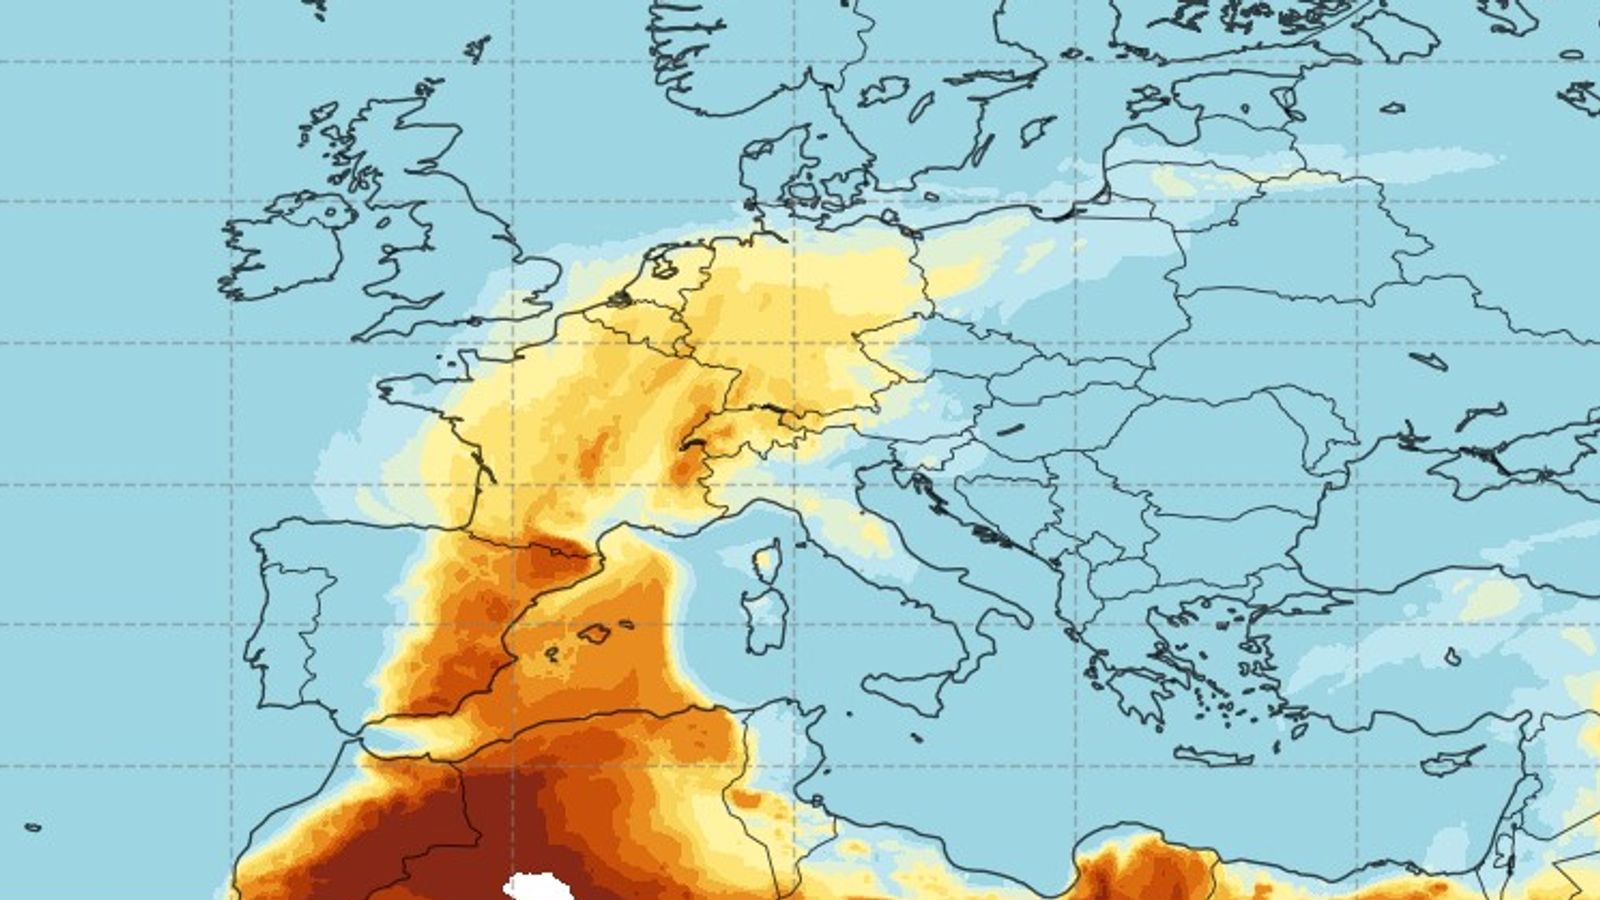 rete e pluhurit te saharase jashtezakonisht intensive godasin evropen agjencia e be per atmosferen kur pritet te mbaroje